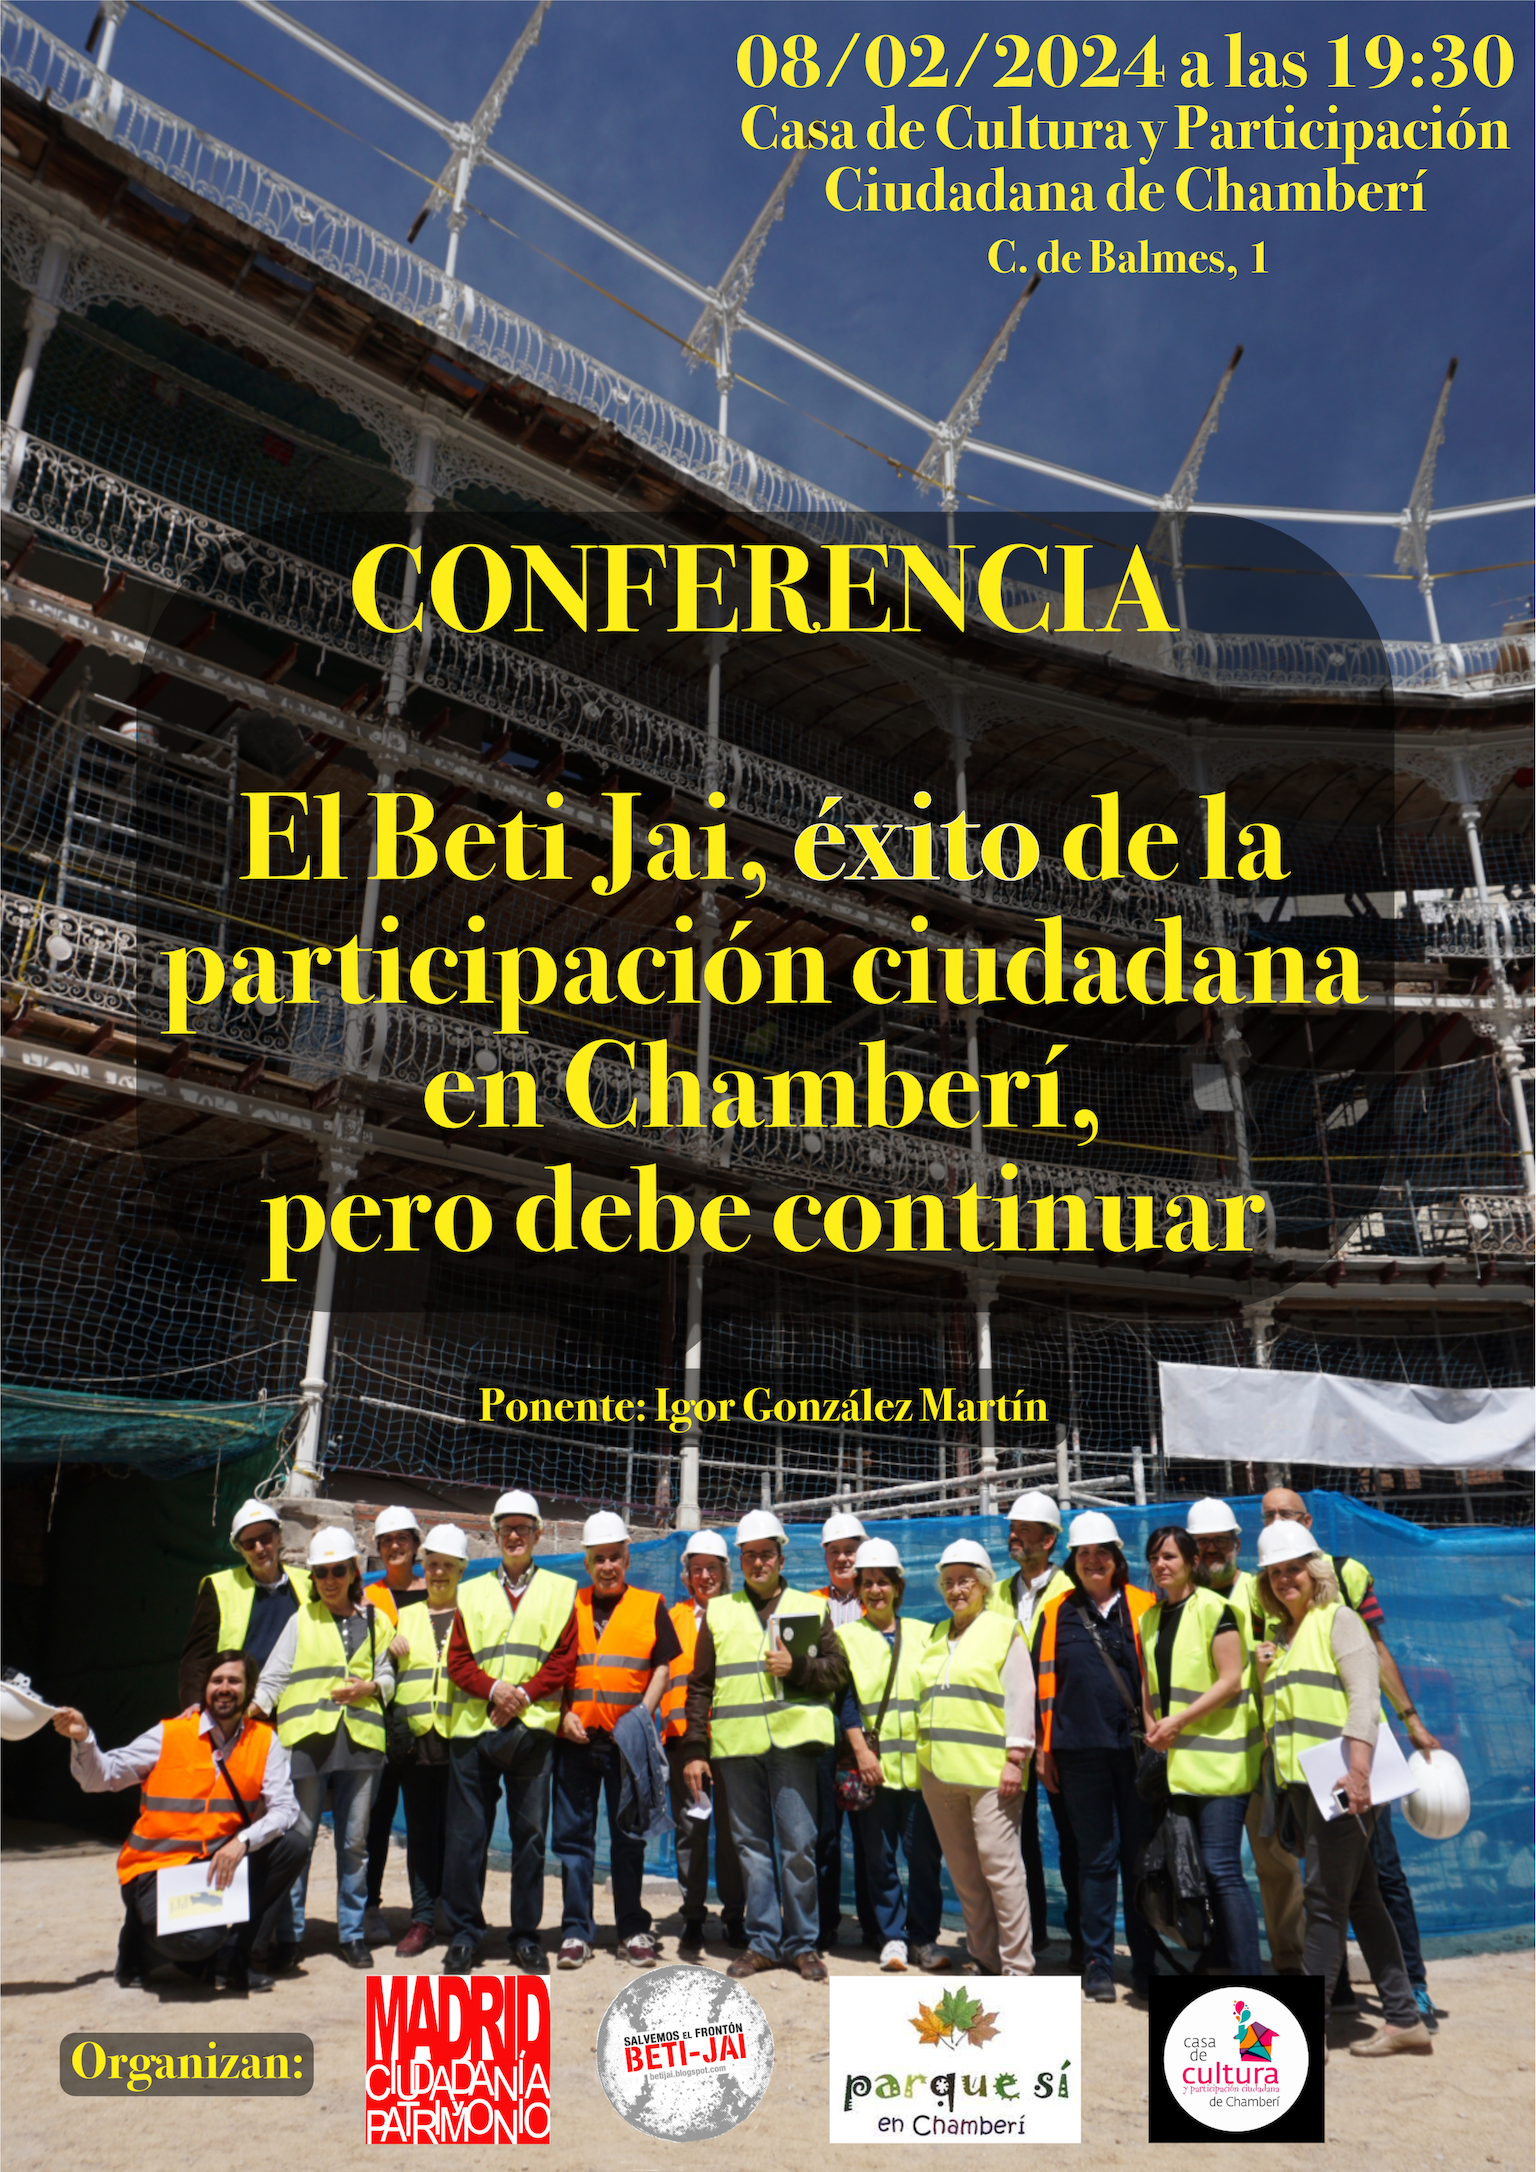 CONFERENCIA (8/2 a las 19:30): El Beti Jai, éxito de la participación ciudadana en Chamberí, pero debe continuar